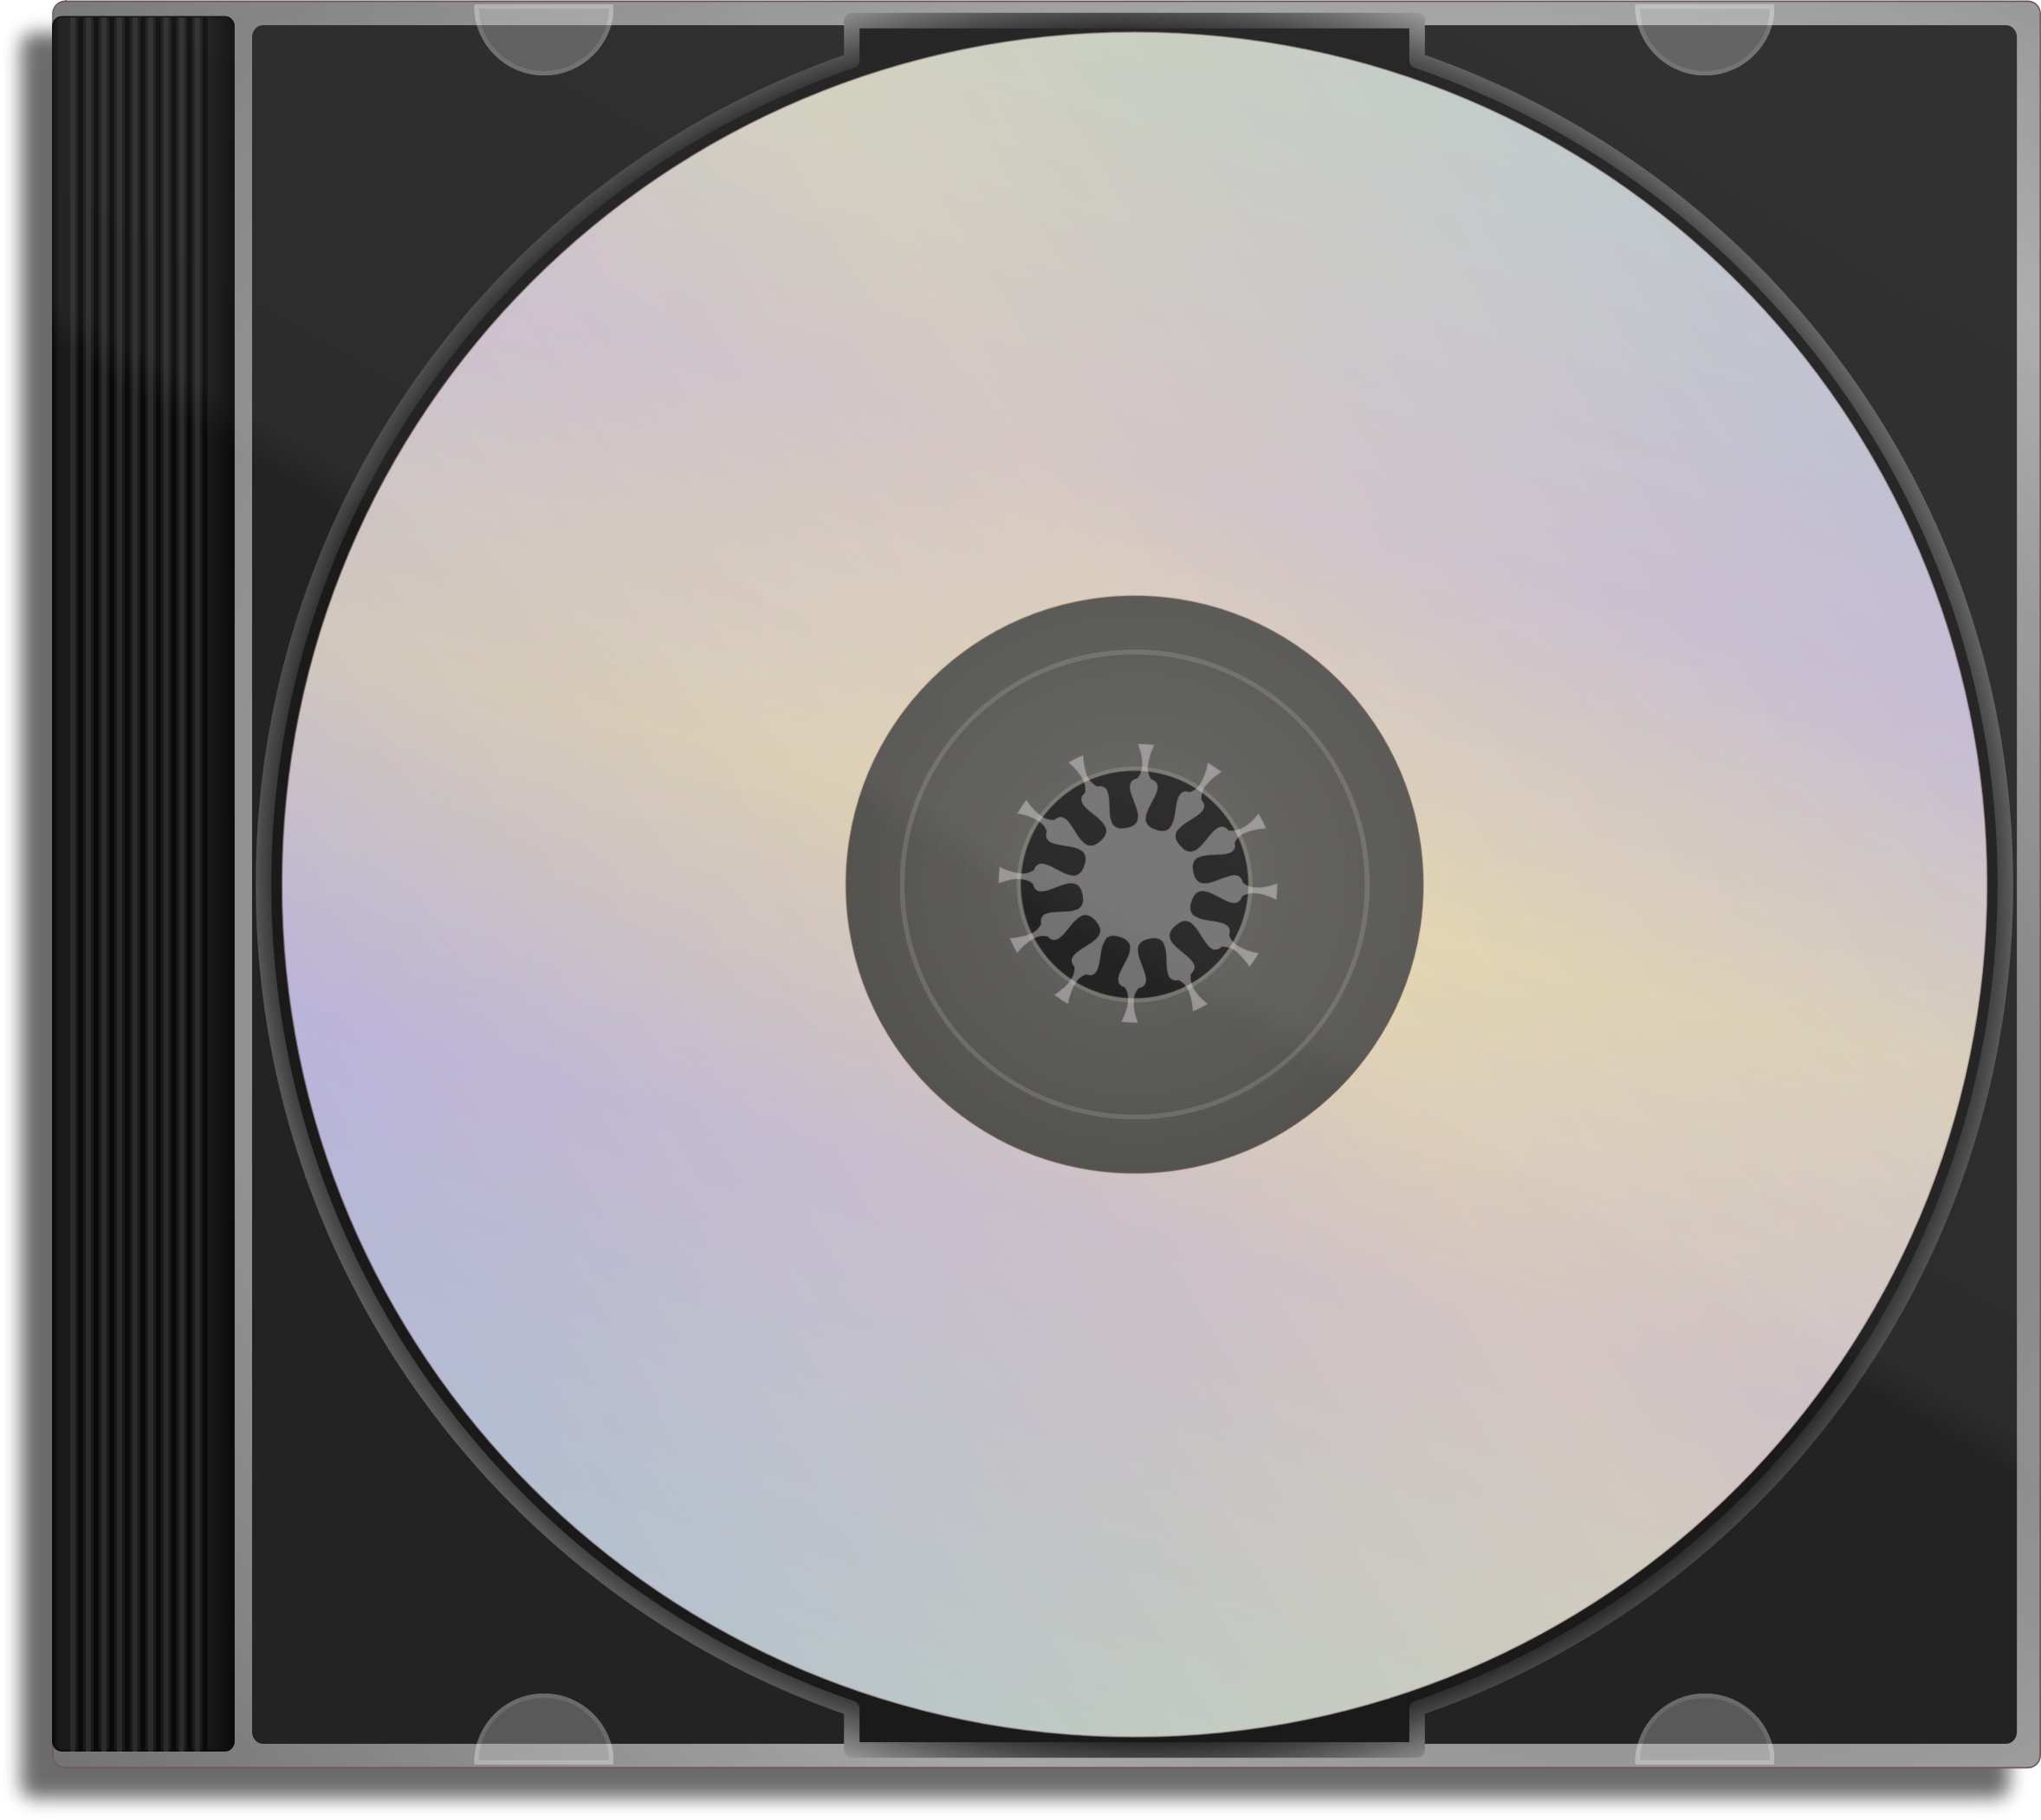 Коробки сд. Компакт – диск, Compact Disc (CD). CD-ROM (Compact Disk ROM). 1 СД диск. CD диск в упаковке.